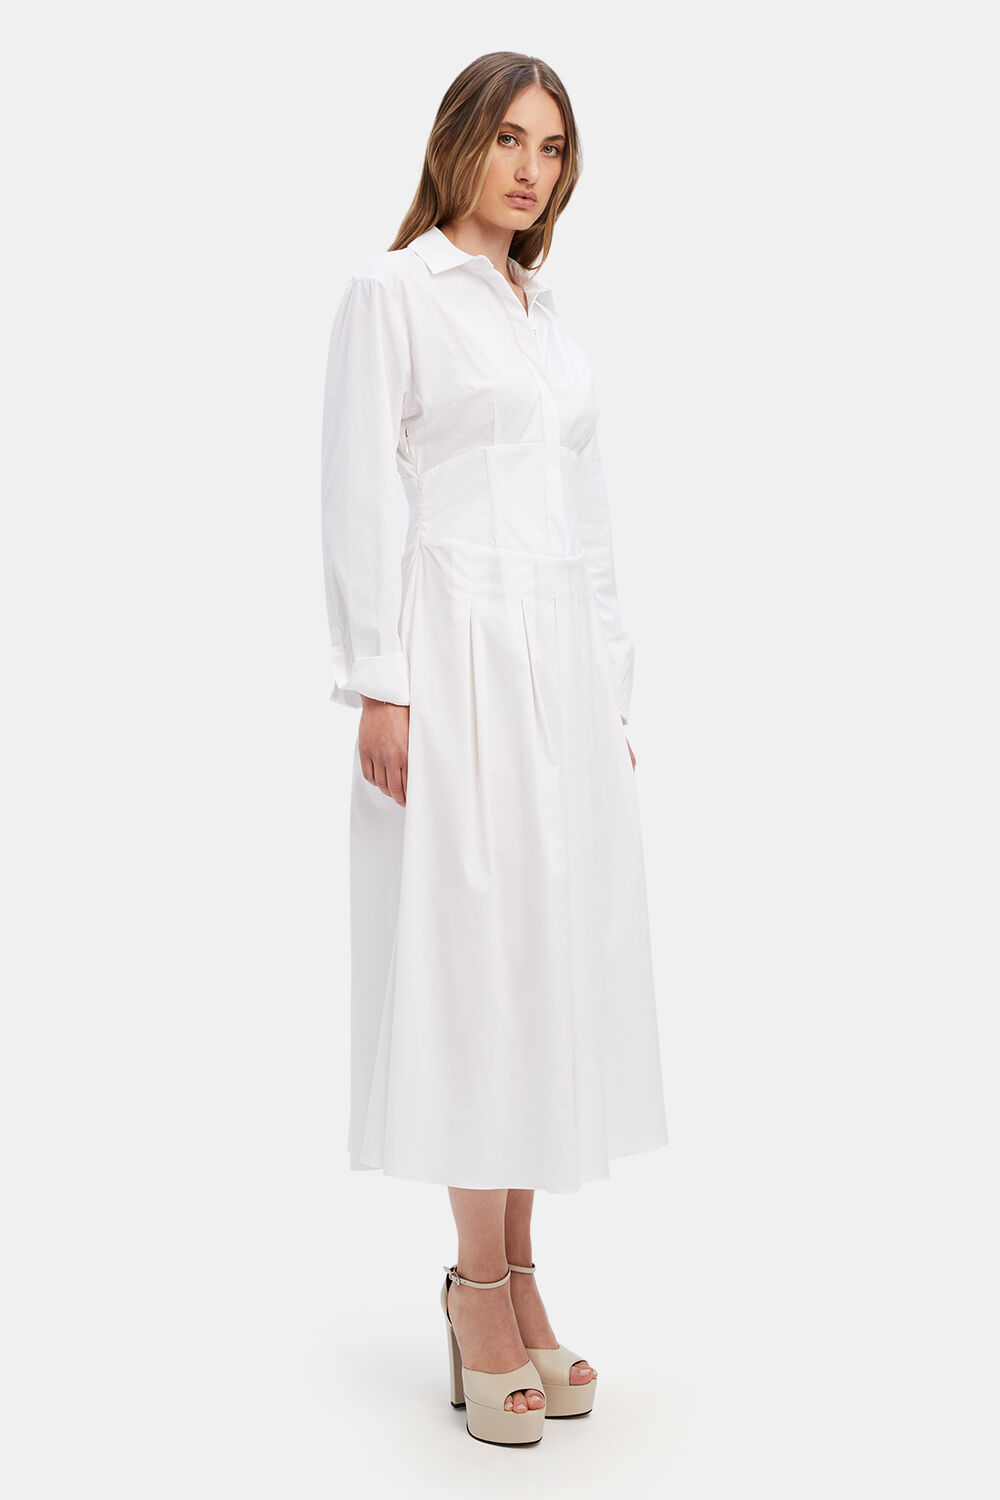 AMIRA CORSET SHIRT DRESS in colour BRIGHT WHITE